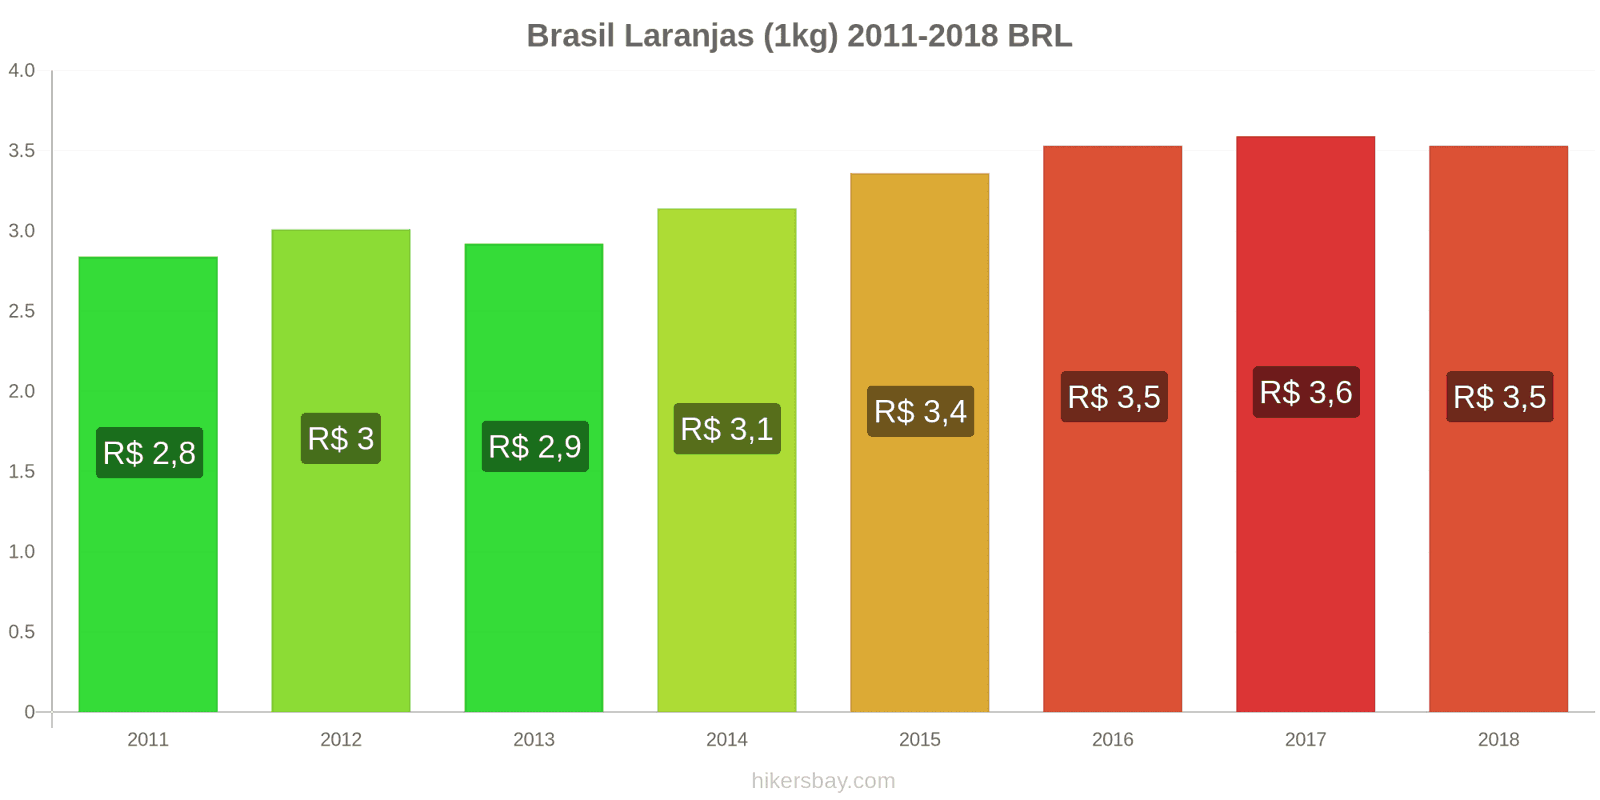 Brasil mudanças de preços Laranjas (1kg) hikersbay.com